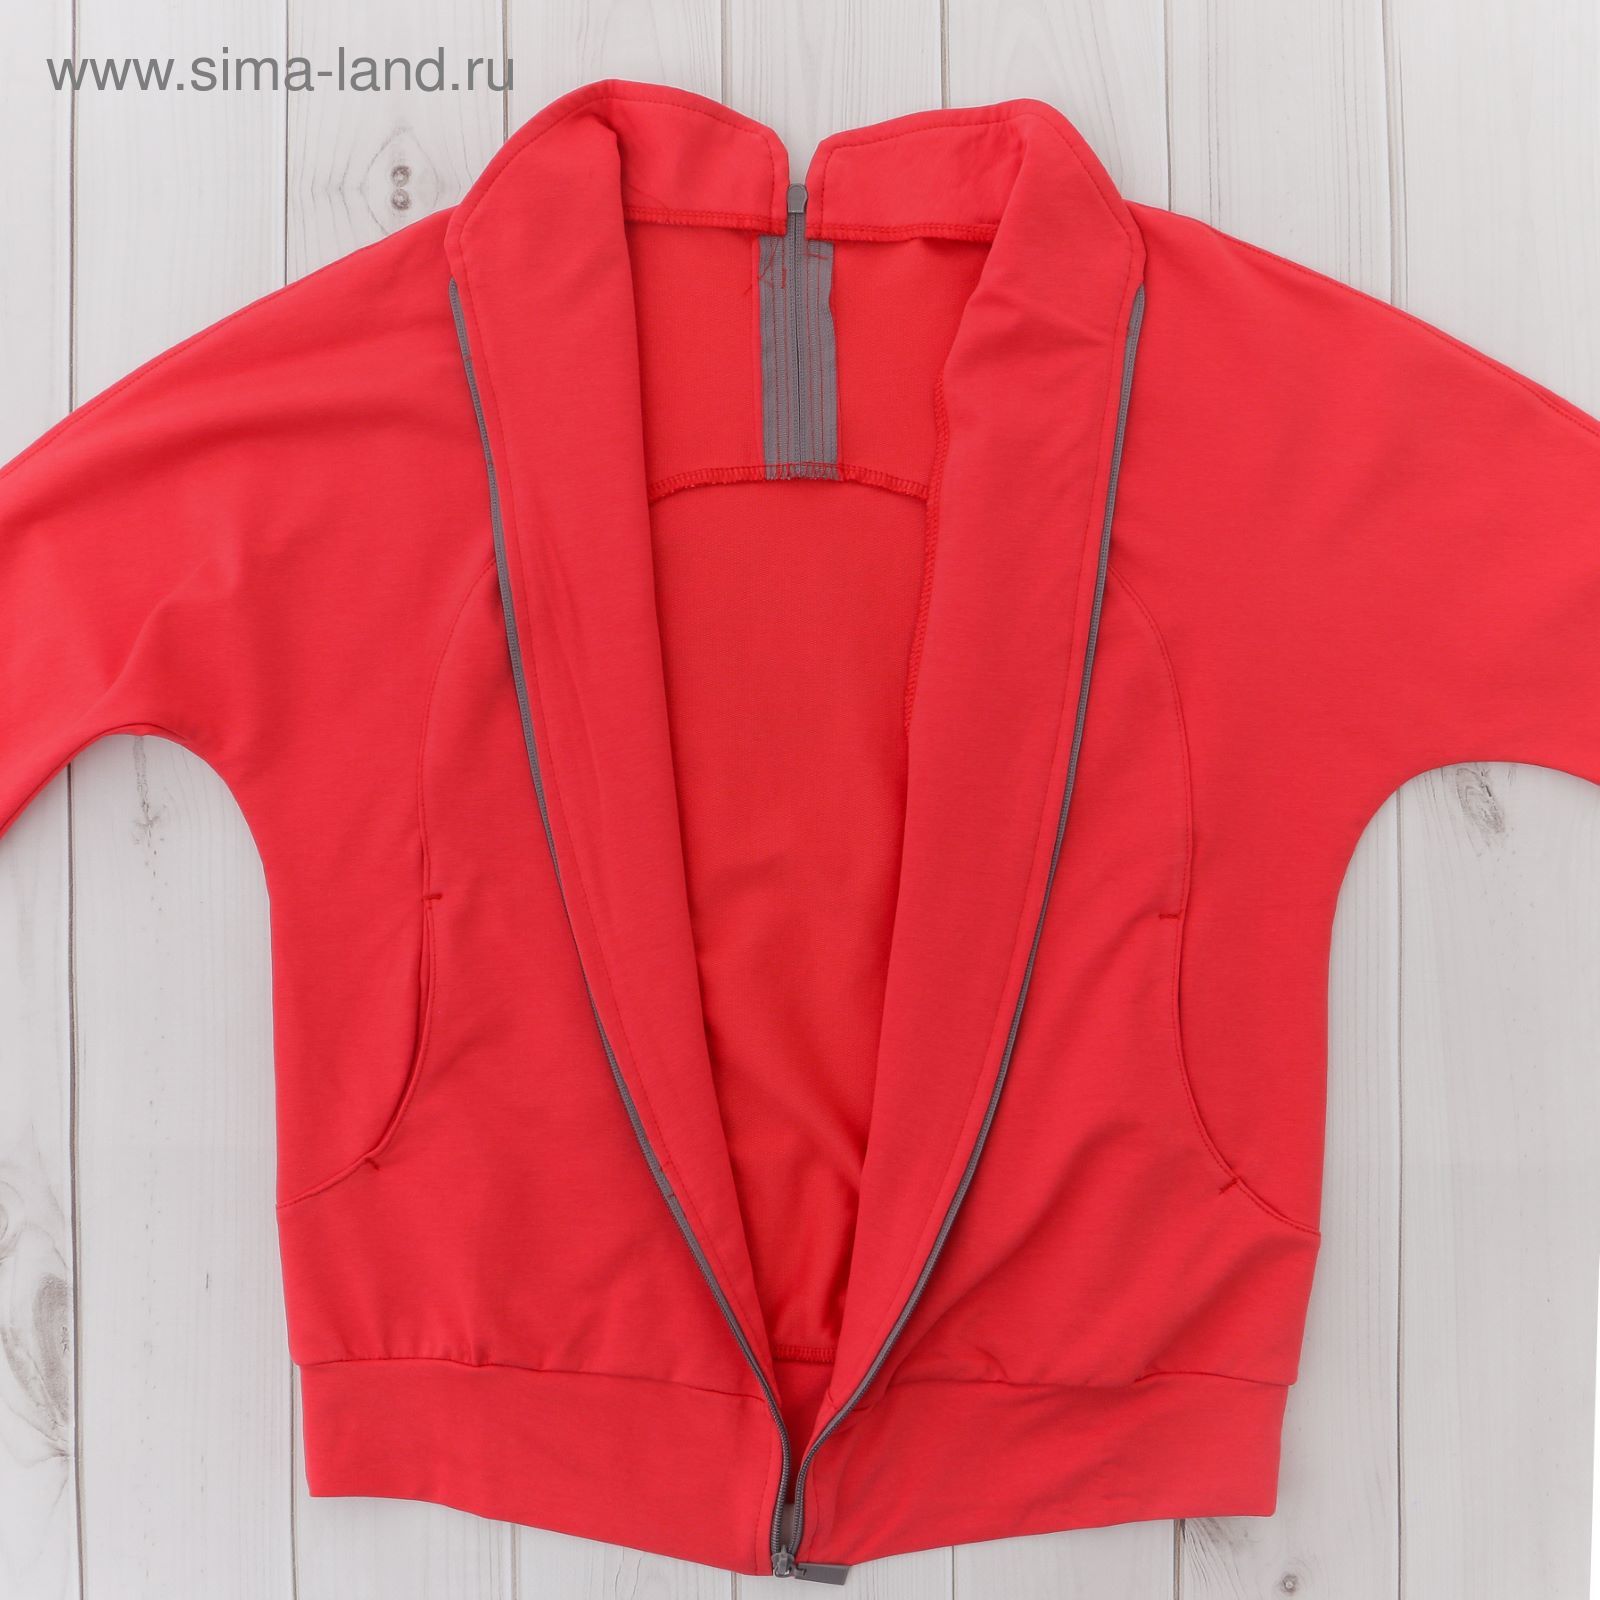 Костюм женский (куртка, брюки) М-529-05 коралл, р-р 42